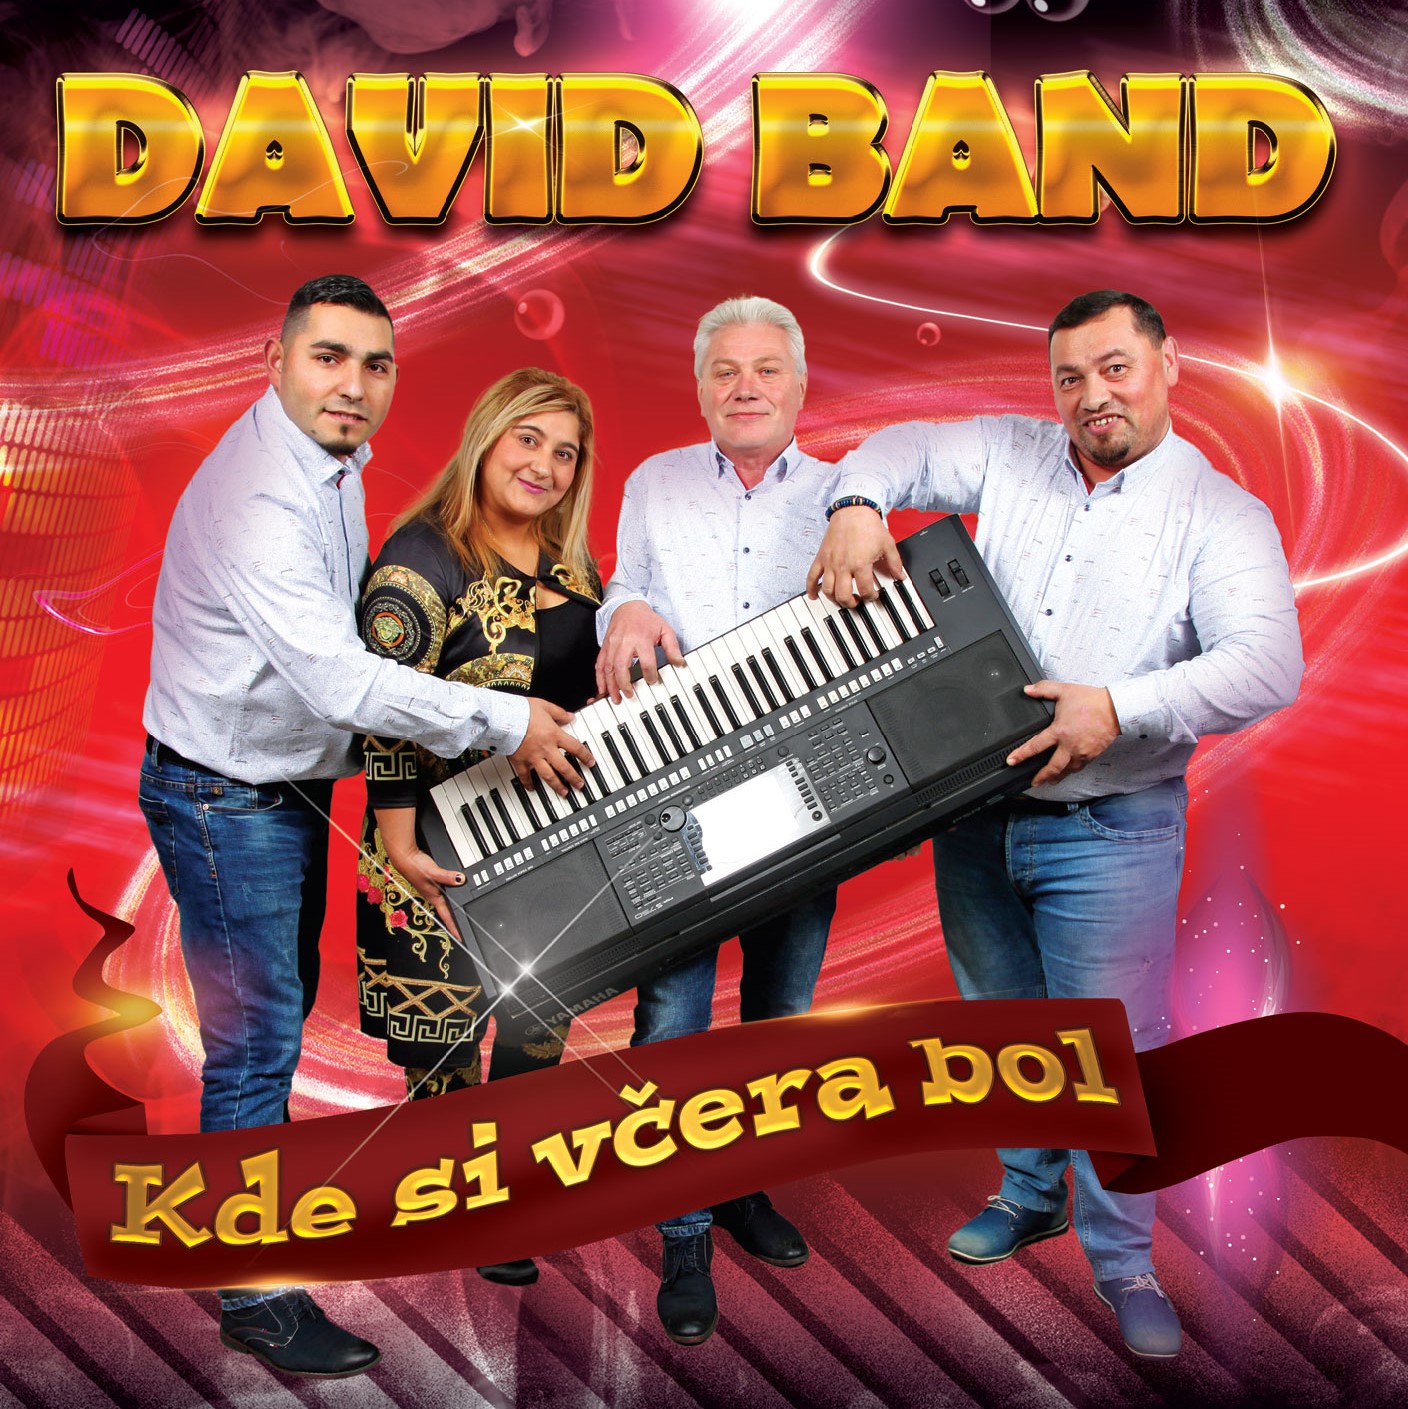 David Band - Kde si vera bol (cd)